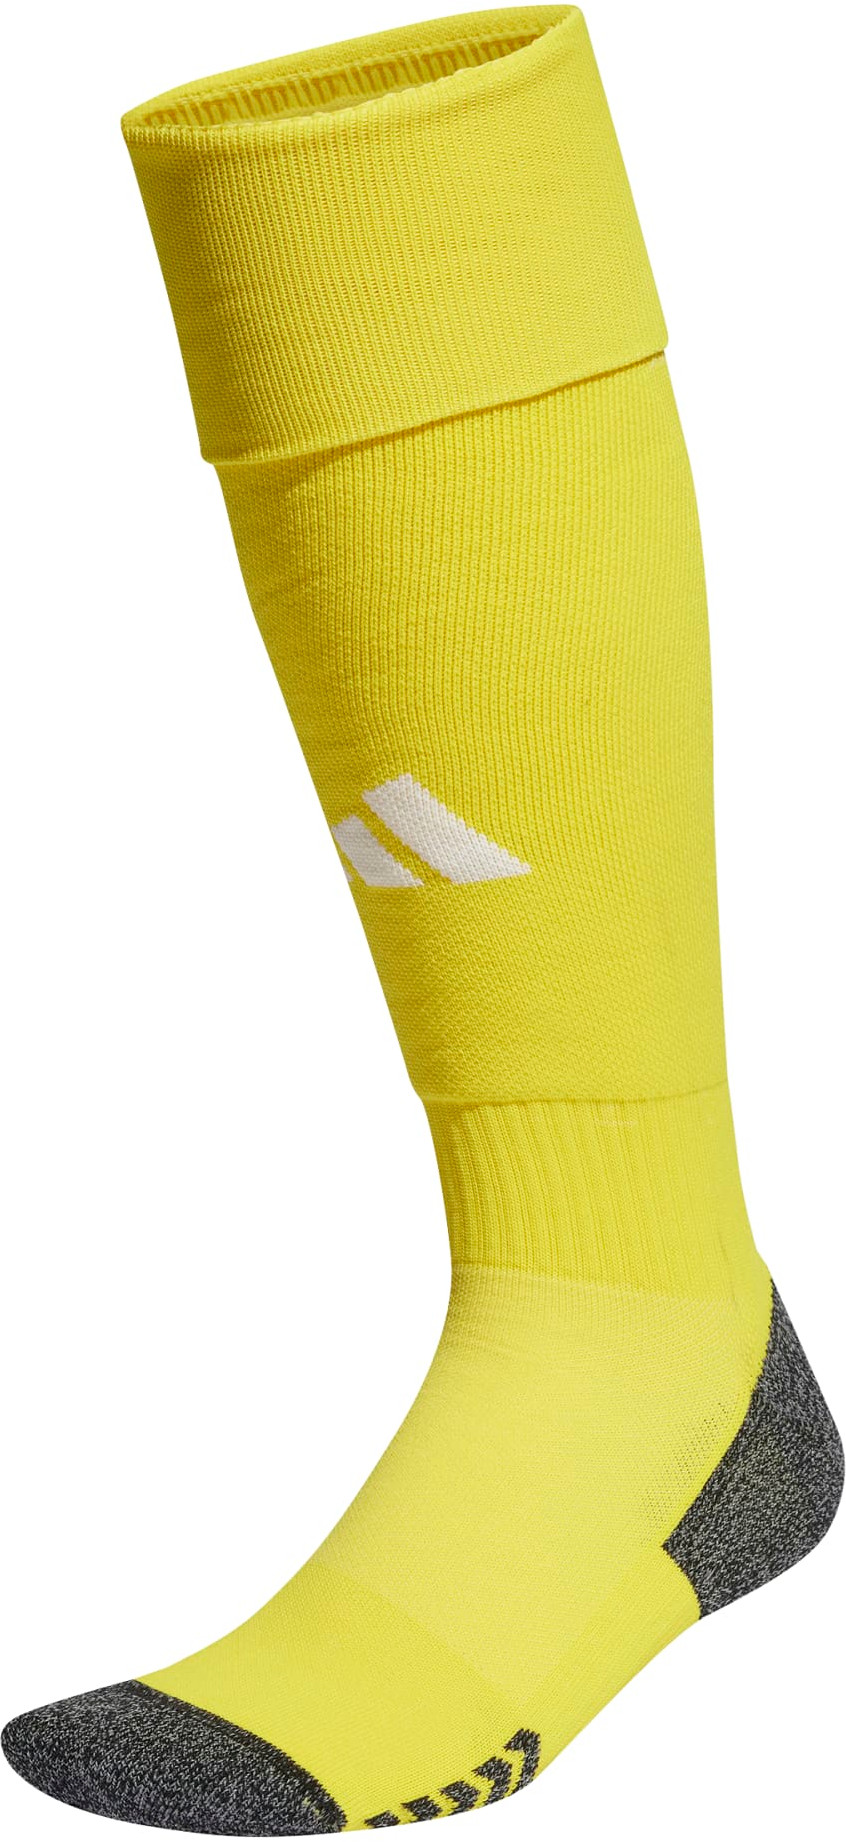 Футболни чорапи adidas ADI 24 SOCK